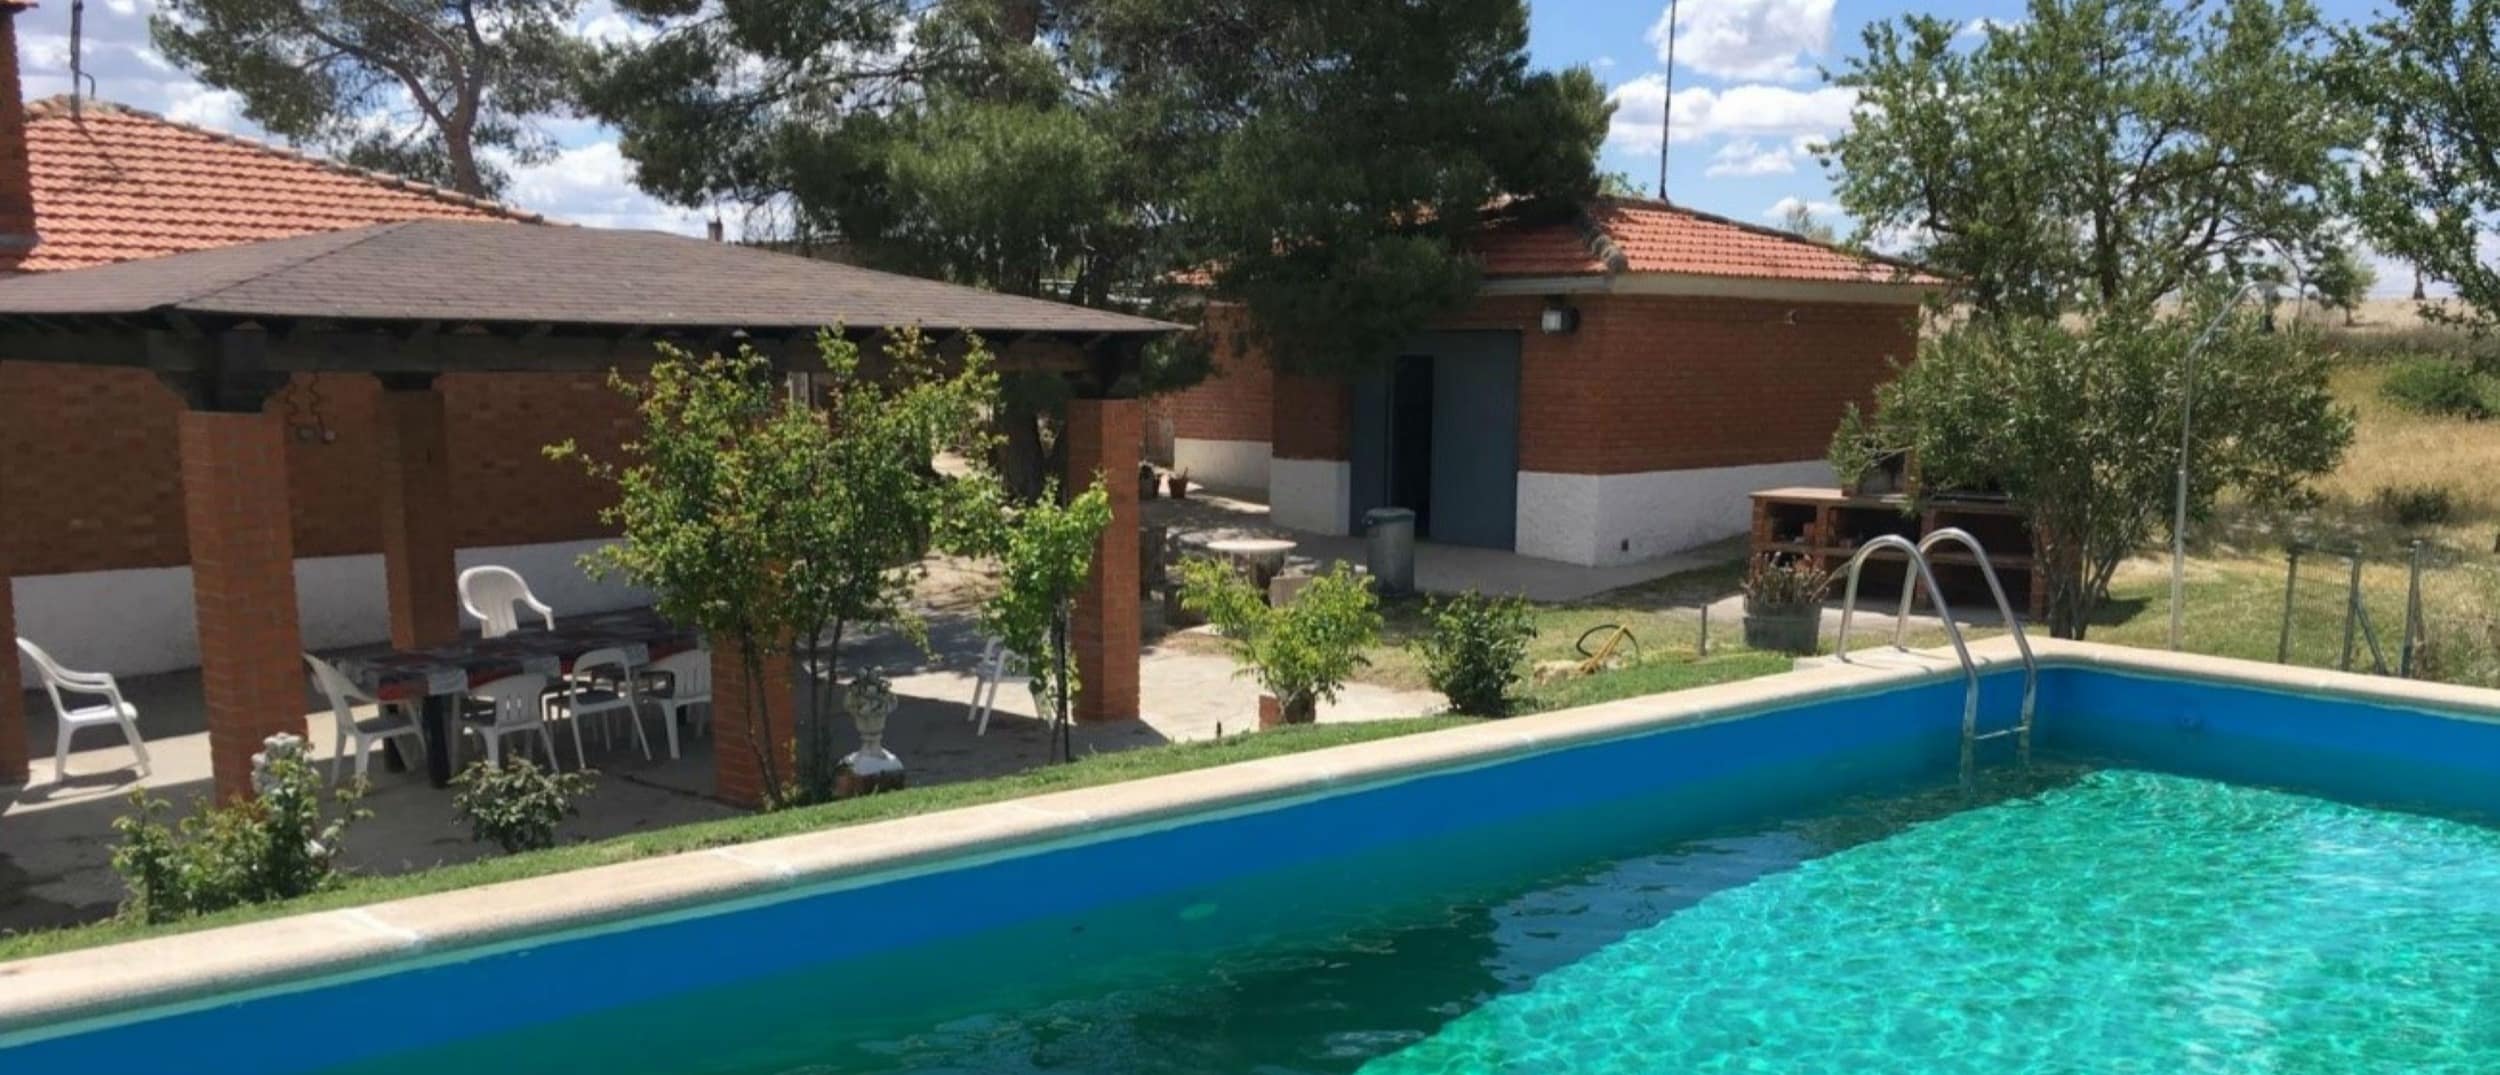 Tu escapada a una casa rural con piscina cerca de Madrid